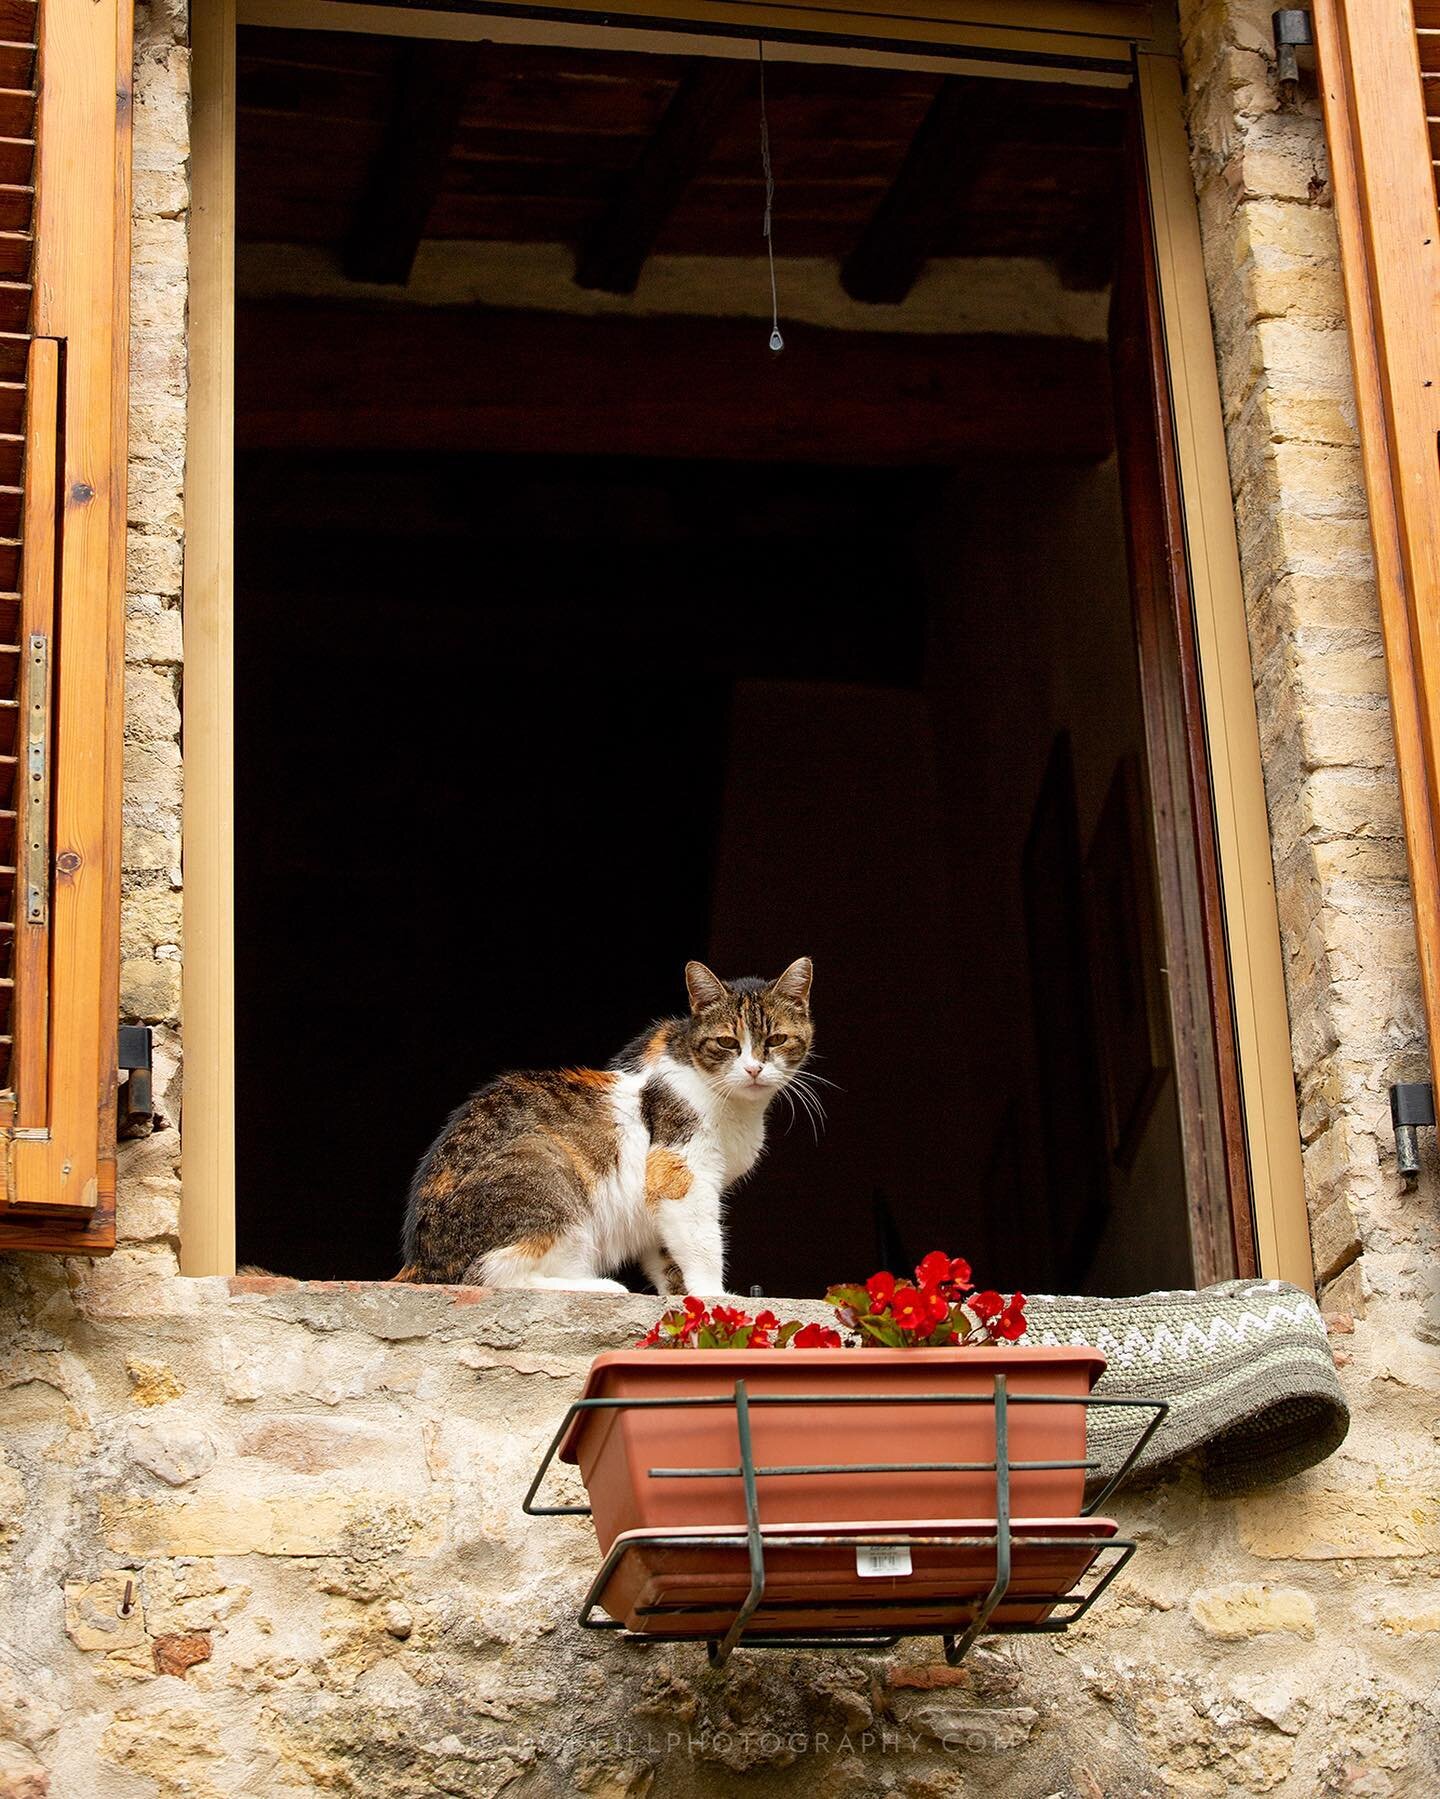 Neighbouring cat in Tuscany #catsofitaly